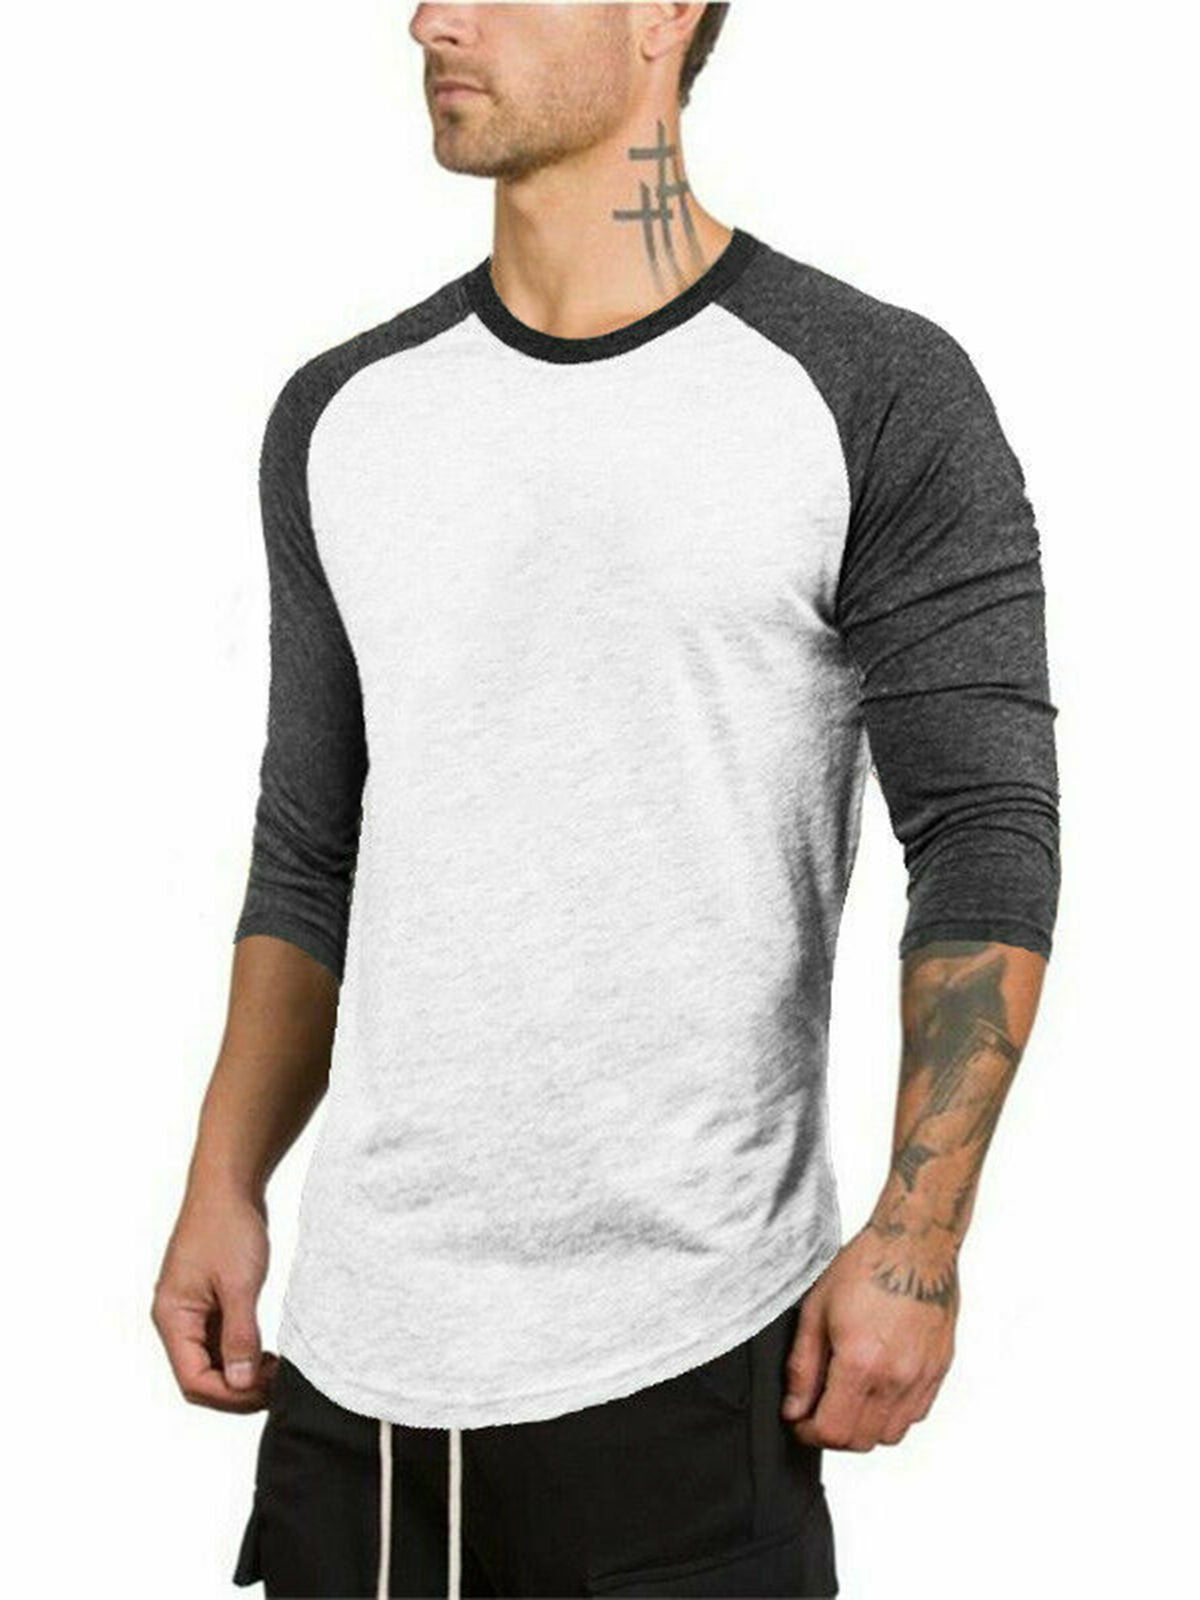 Men's 3/4 Slim Fit Shirt Casual Sport T-Shirt Top - Walmart.com